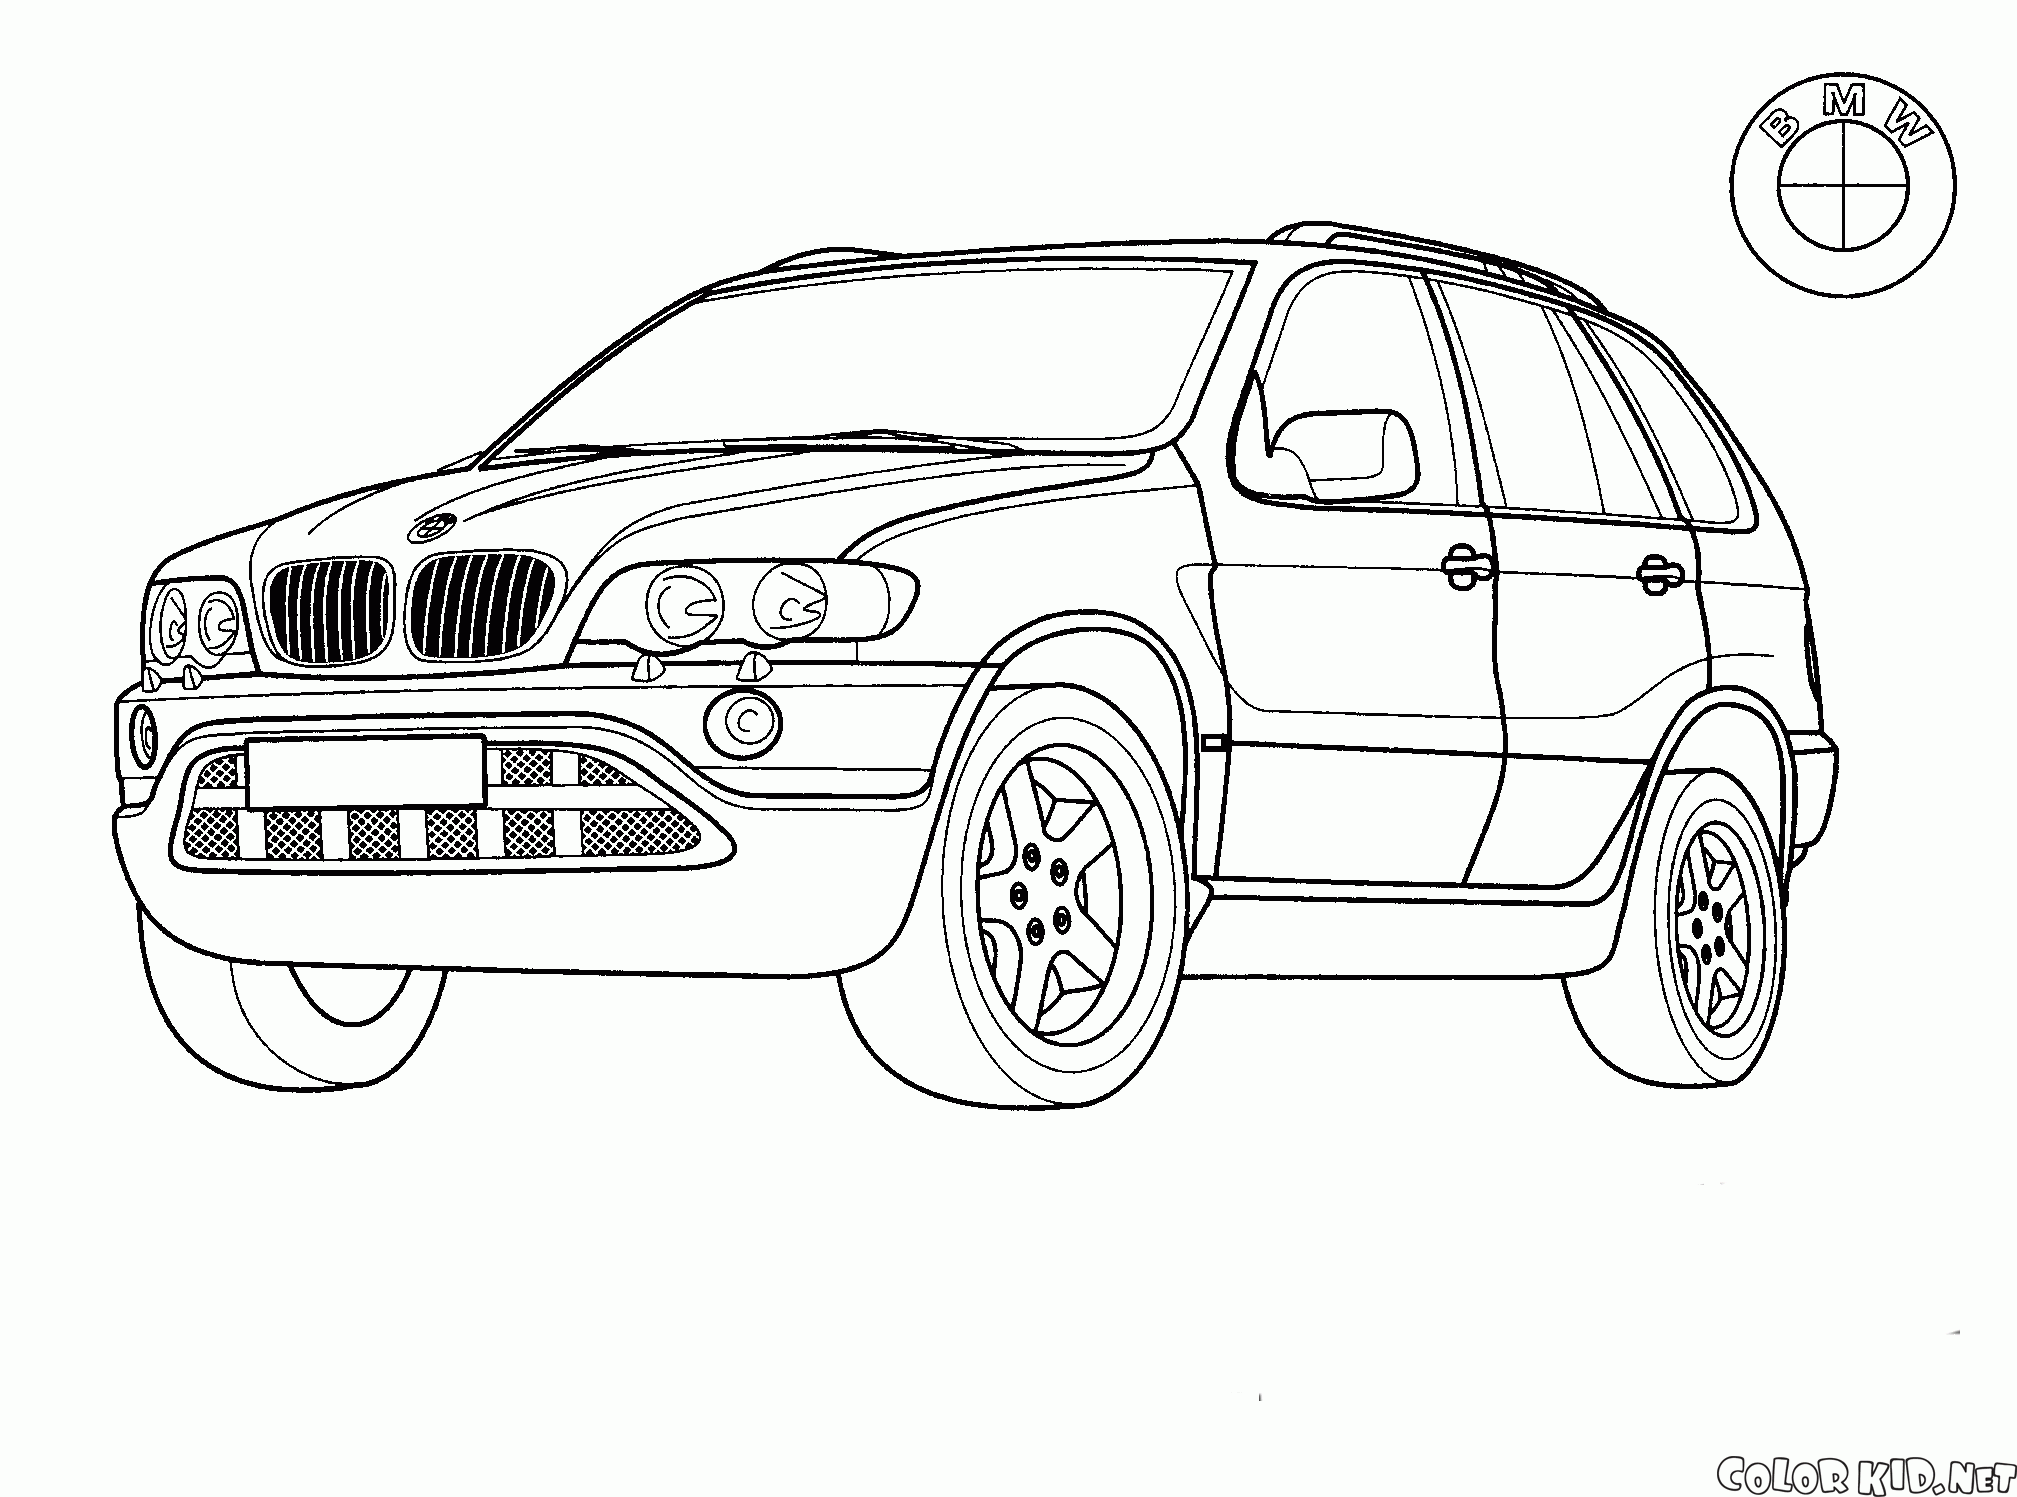 Ford.ru/Cars - Ford в России